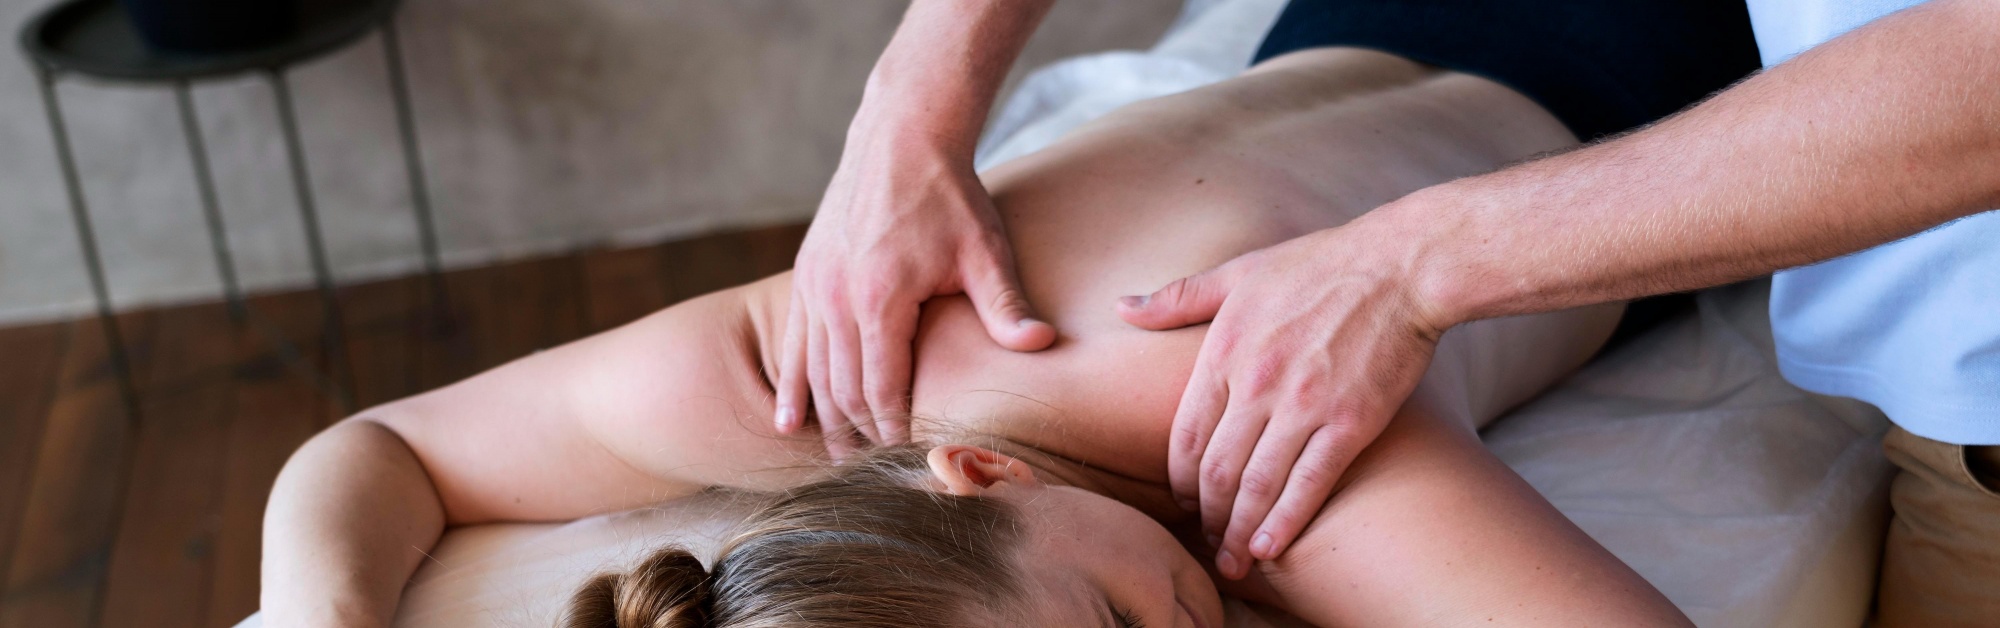 Релаксационный массаж головы шеи рук в домашних условиях – полезные техники